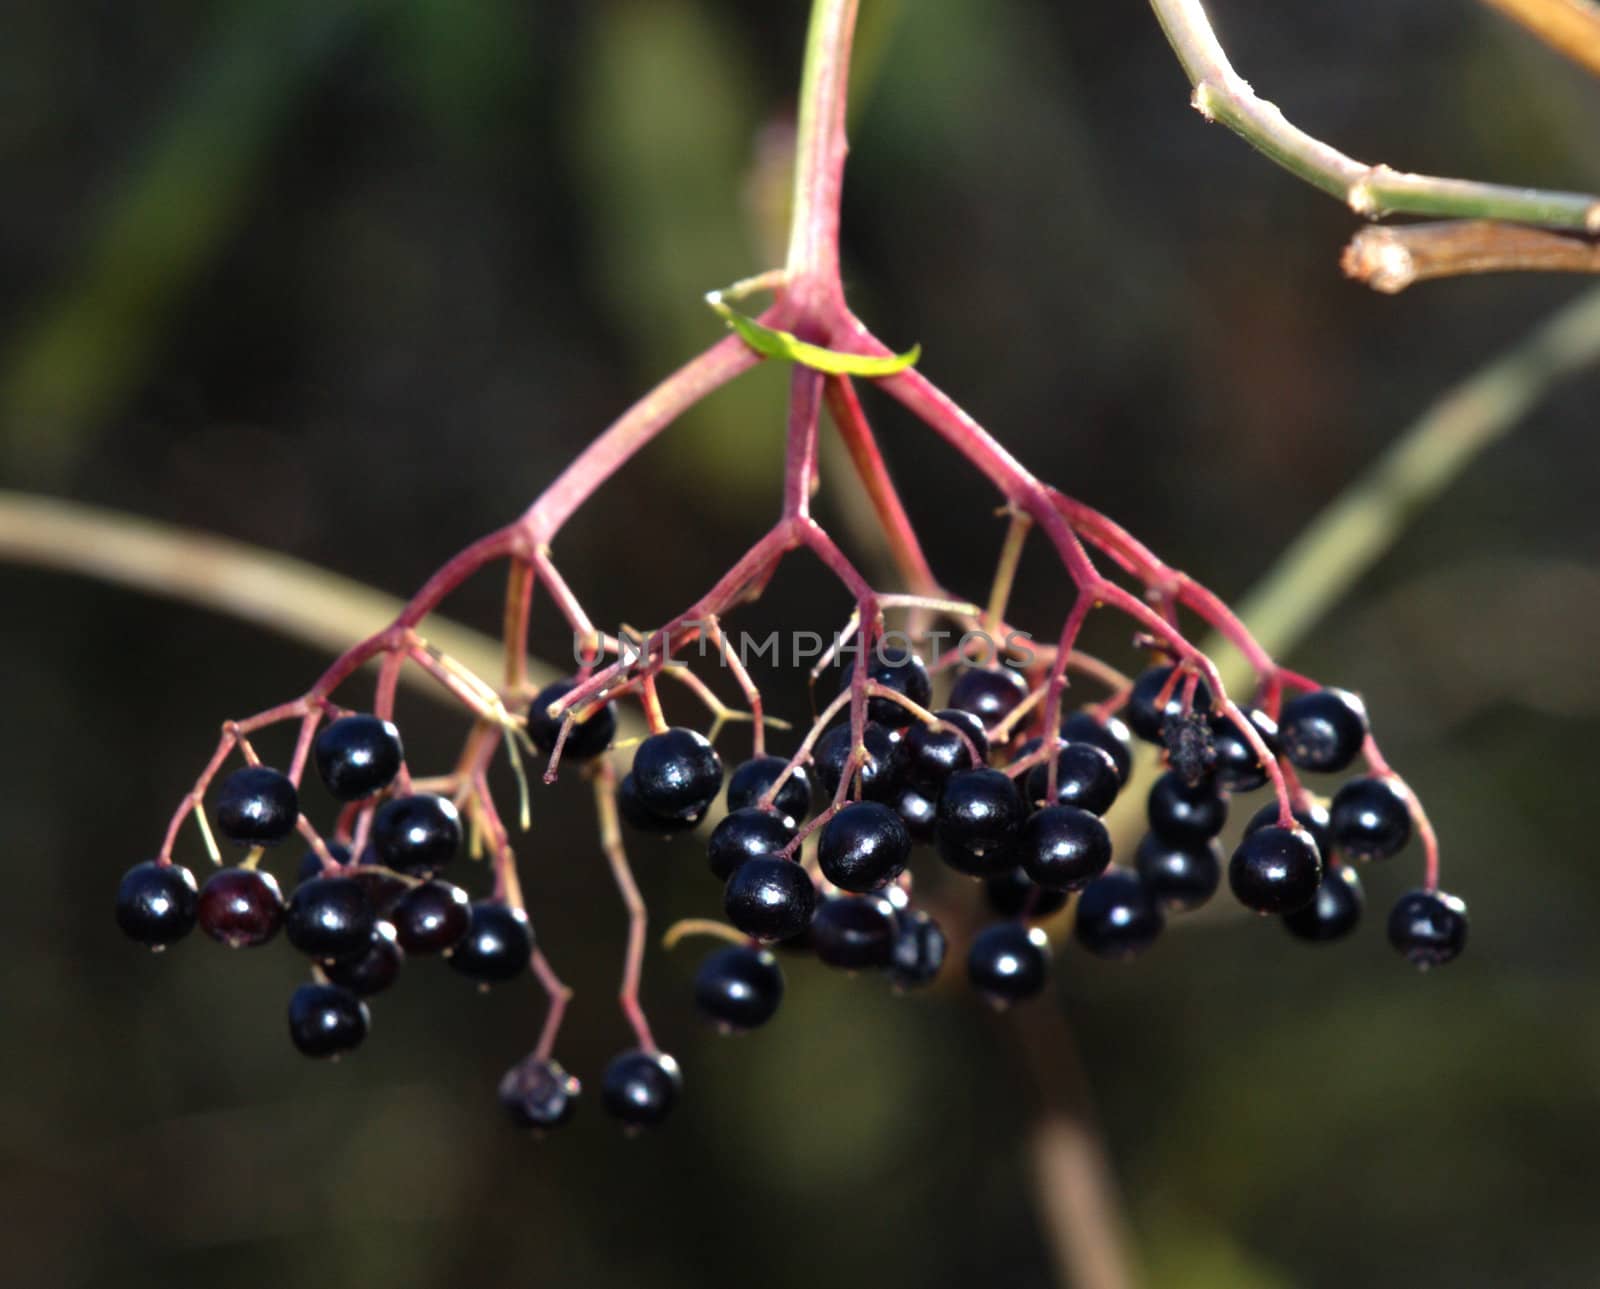 European Black Elder - Sambucus Nigra, fruits